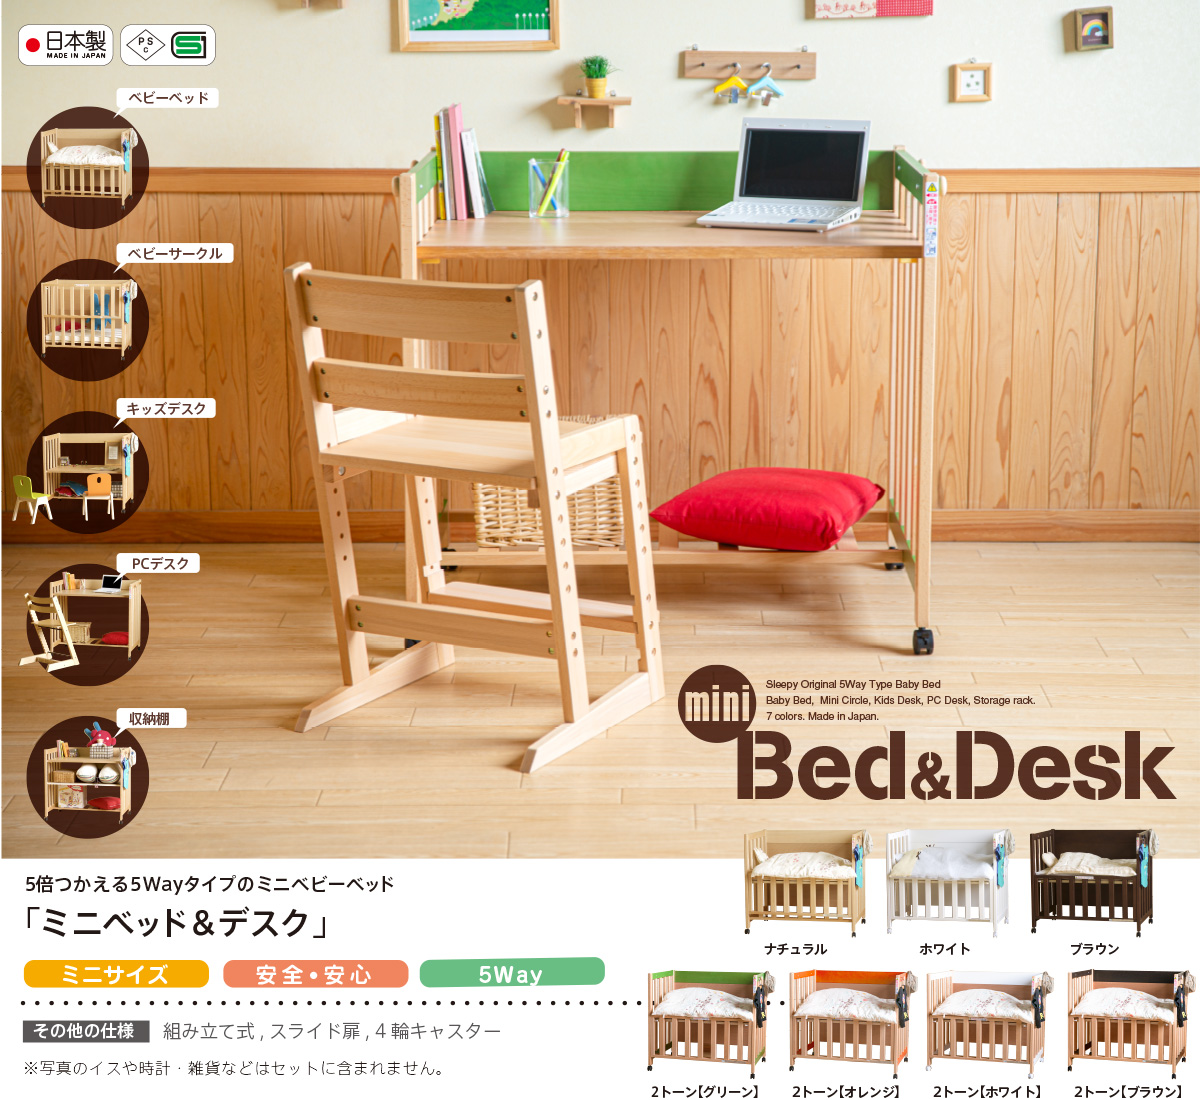 日本製 5way ベビーベッド 「ミニベッド＆デスク」 ベビーベット ミニ 石崎家具 | スリーピー楽天市場店